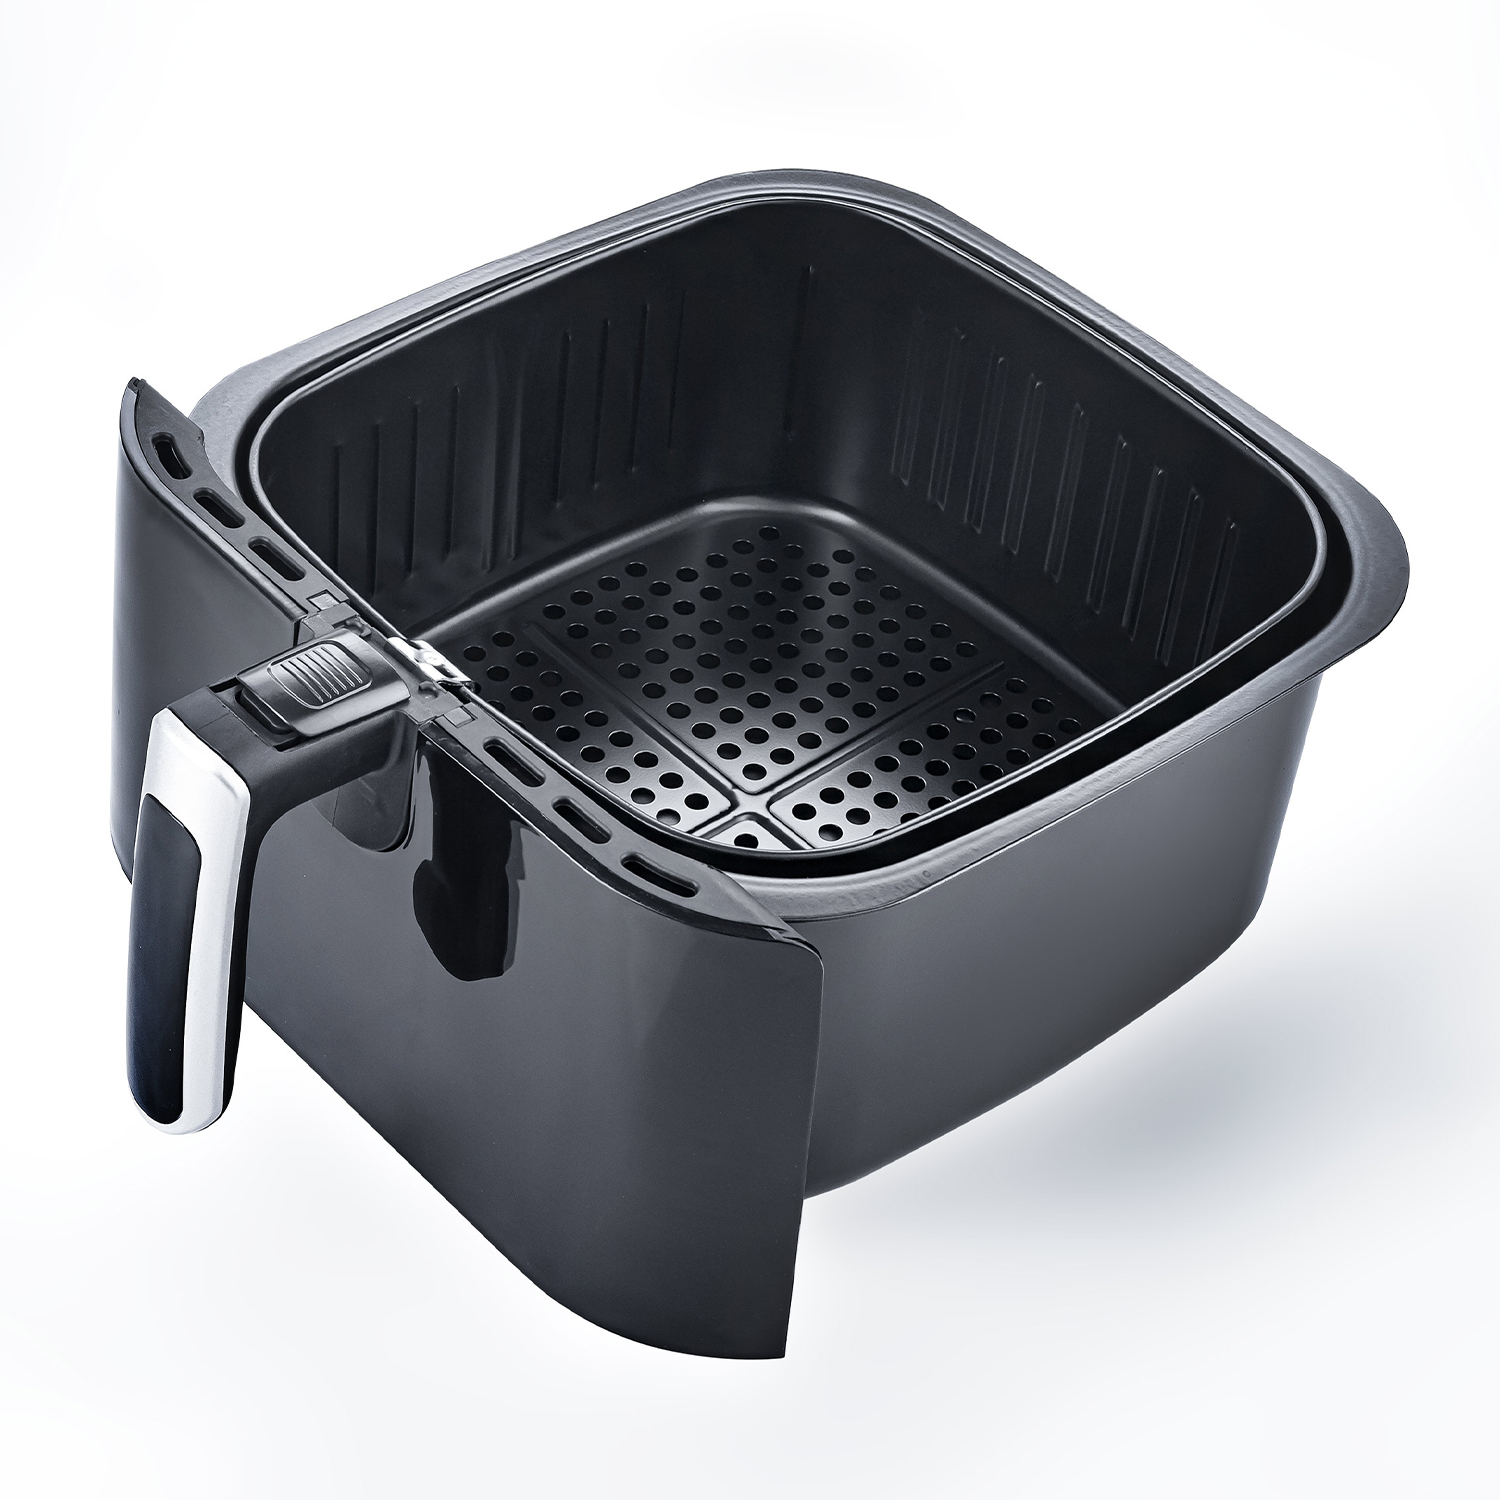 Hot air fryer 1700 watts | 6.2 liter frying basket